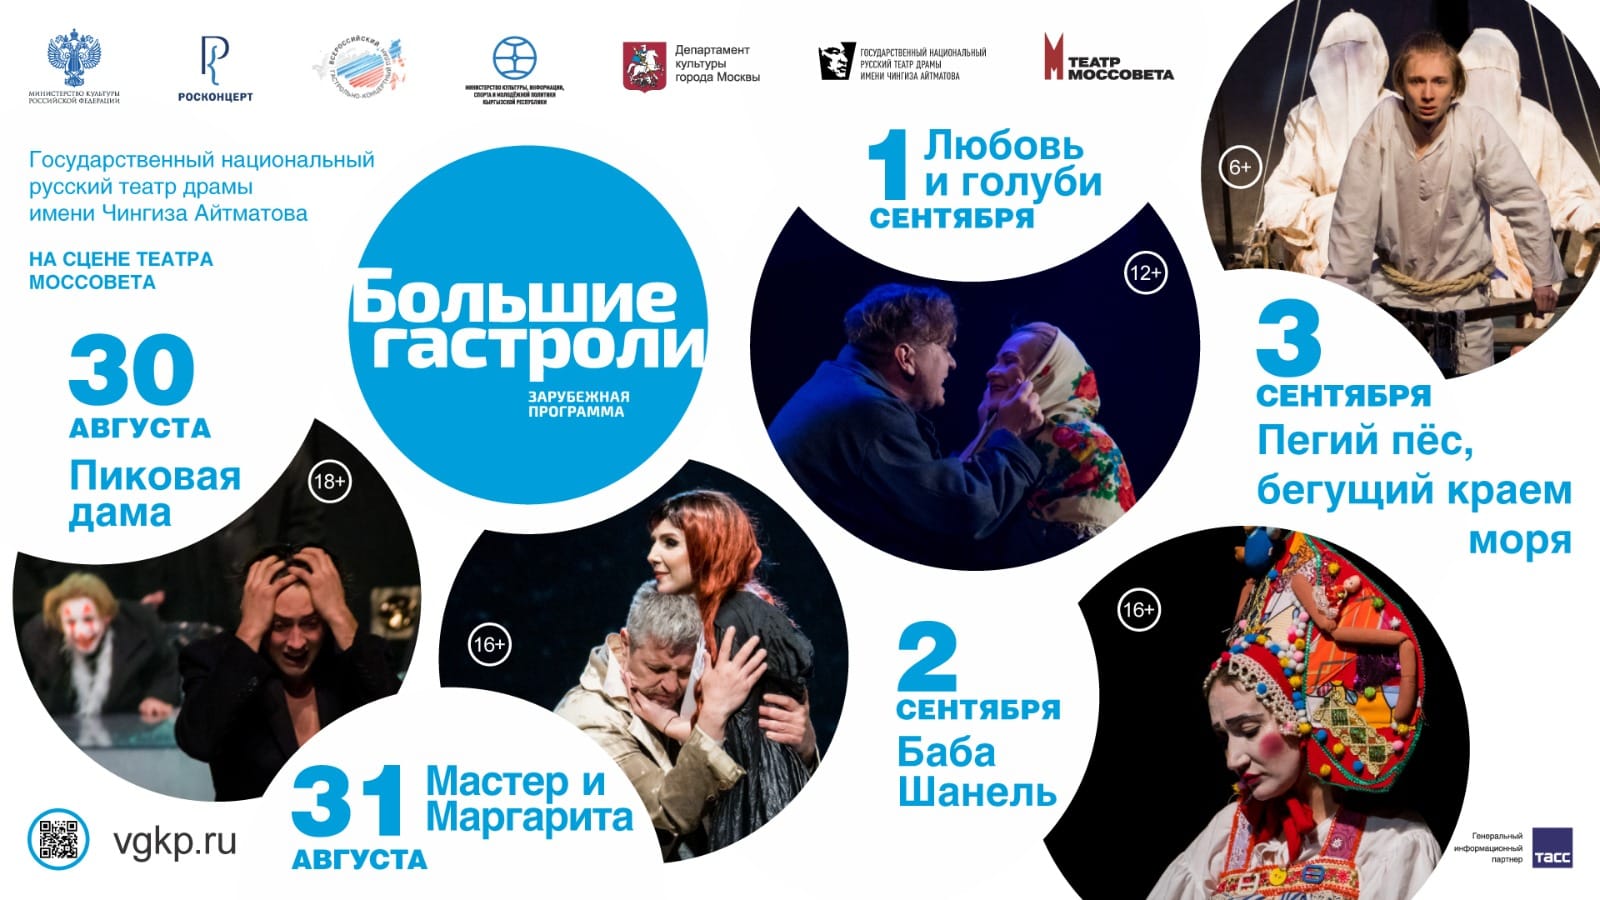 Русский театр драмы имени Чингиза Айтматова отправится на гастроли в Москву